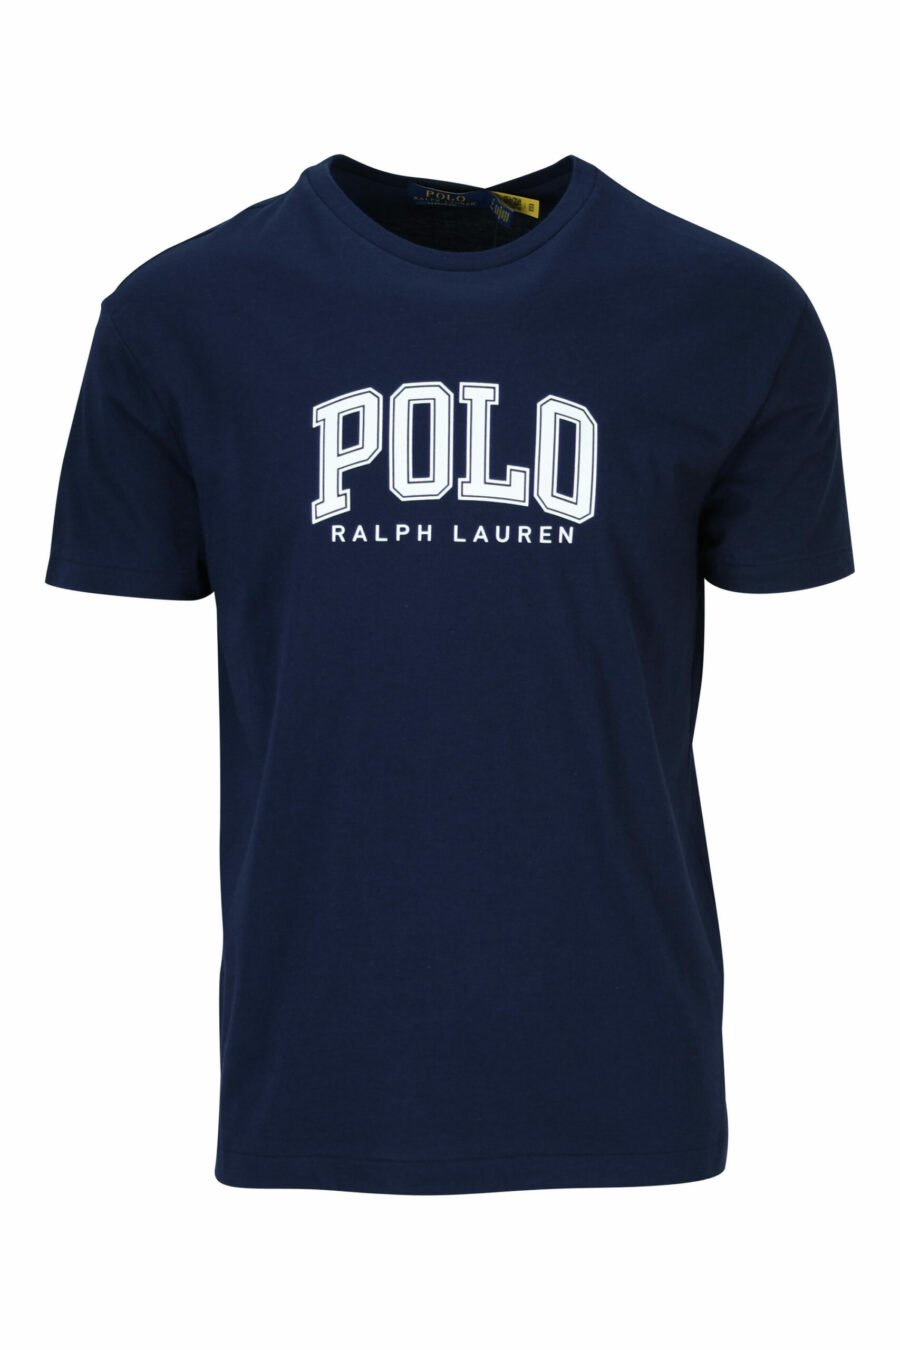 T-shirt azul escura com maxilogo "polo" branco - 3616535909311 scaled